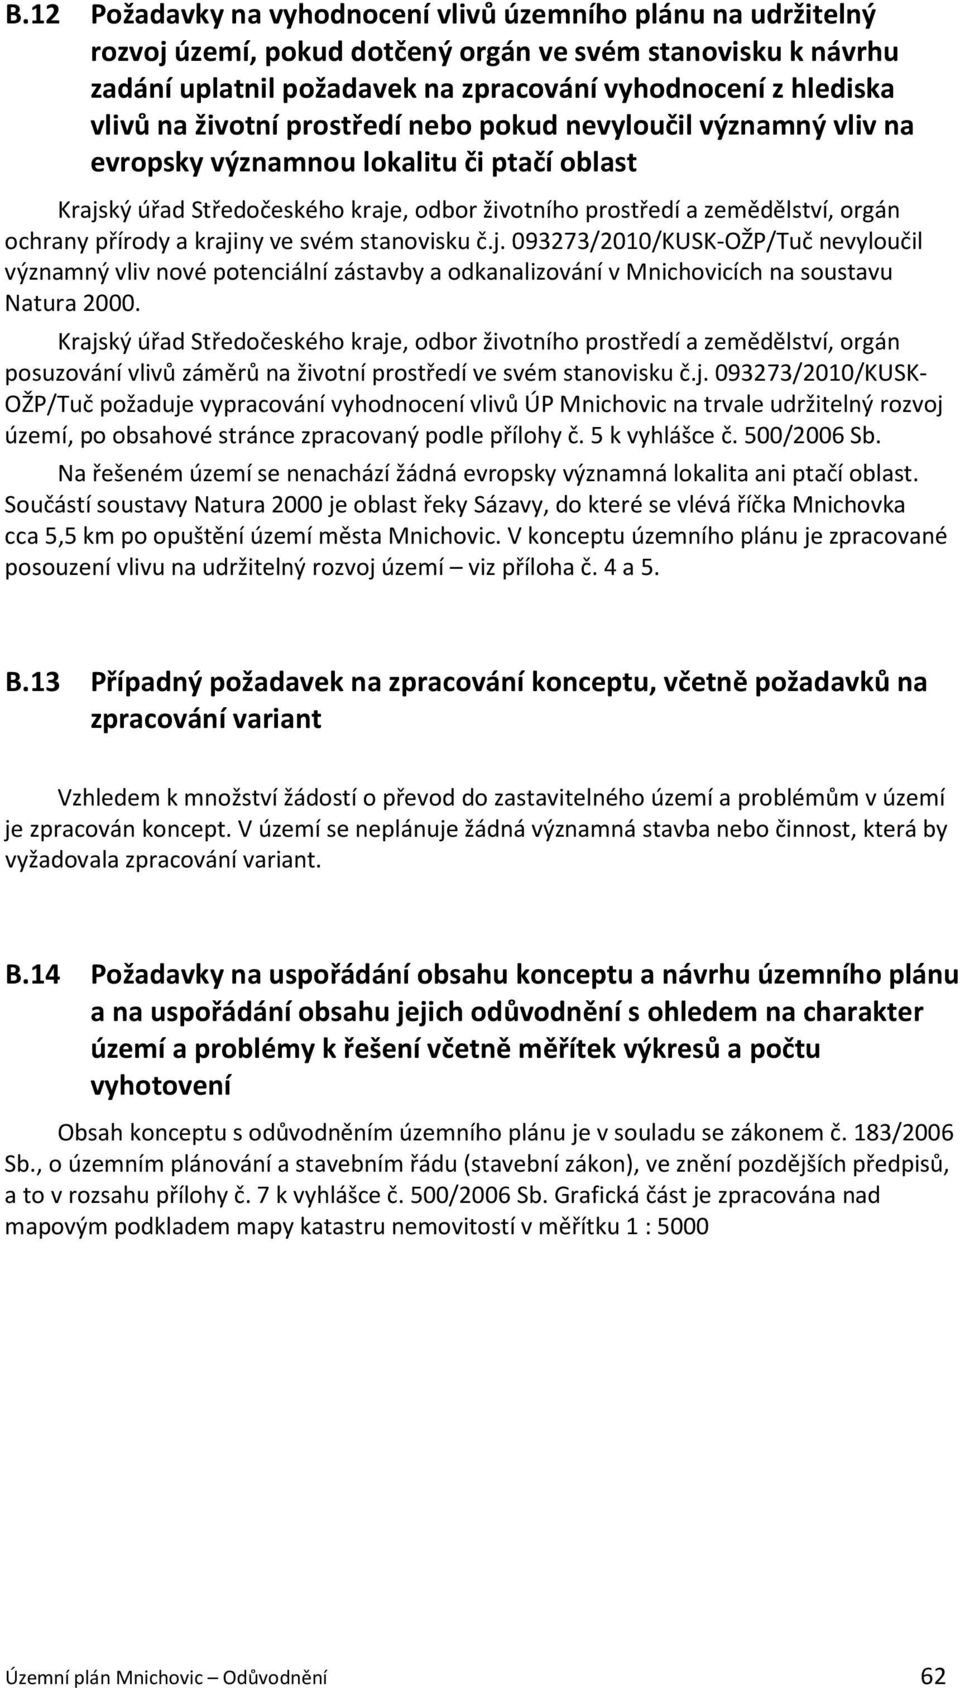 krajiny ve svém stanovisku č.j. 093273/2010/KUSK-OŽP/Tuč nevyloučil významný vliv nové potenciální zástavby a odkanalizování v Mnichovicích na soustavu Natura 2000.